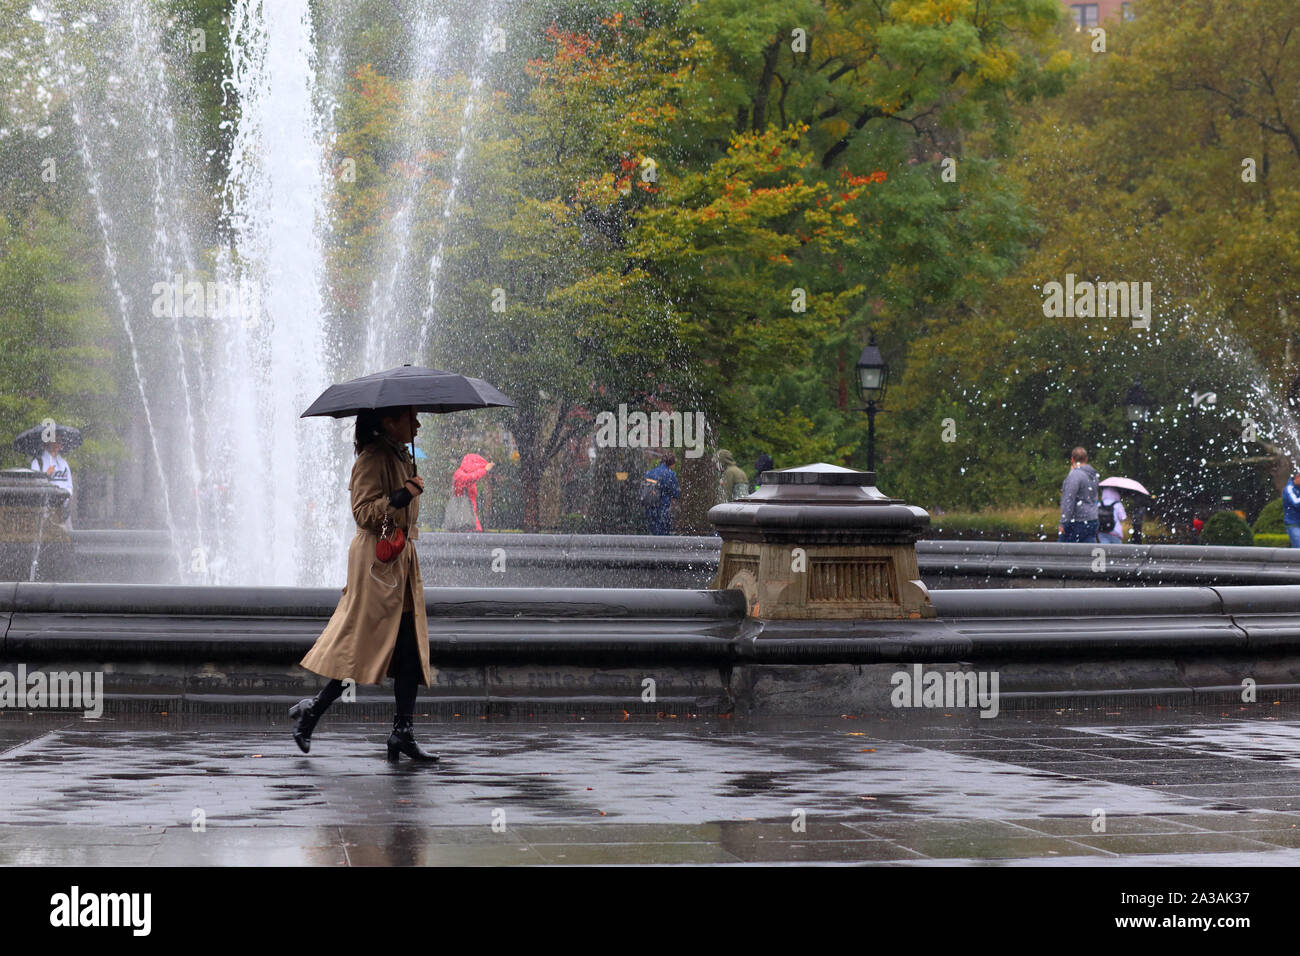 Una donna con un ombrello da passeggiate Washington Square Park fontana su un drizzy, Rainy day in New York City Foto Stock